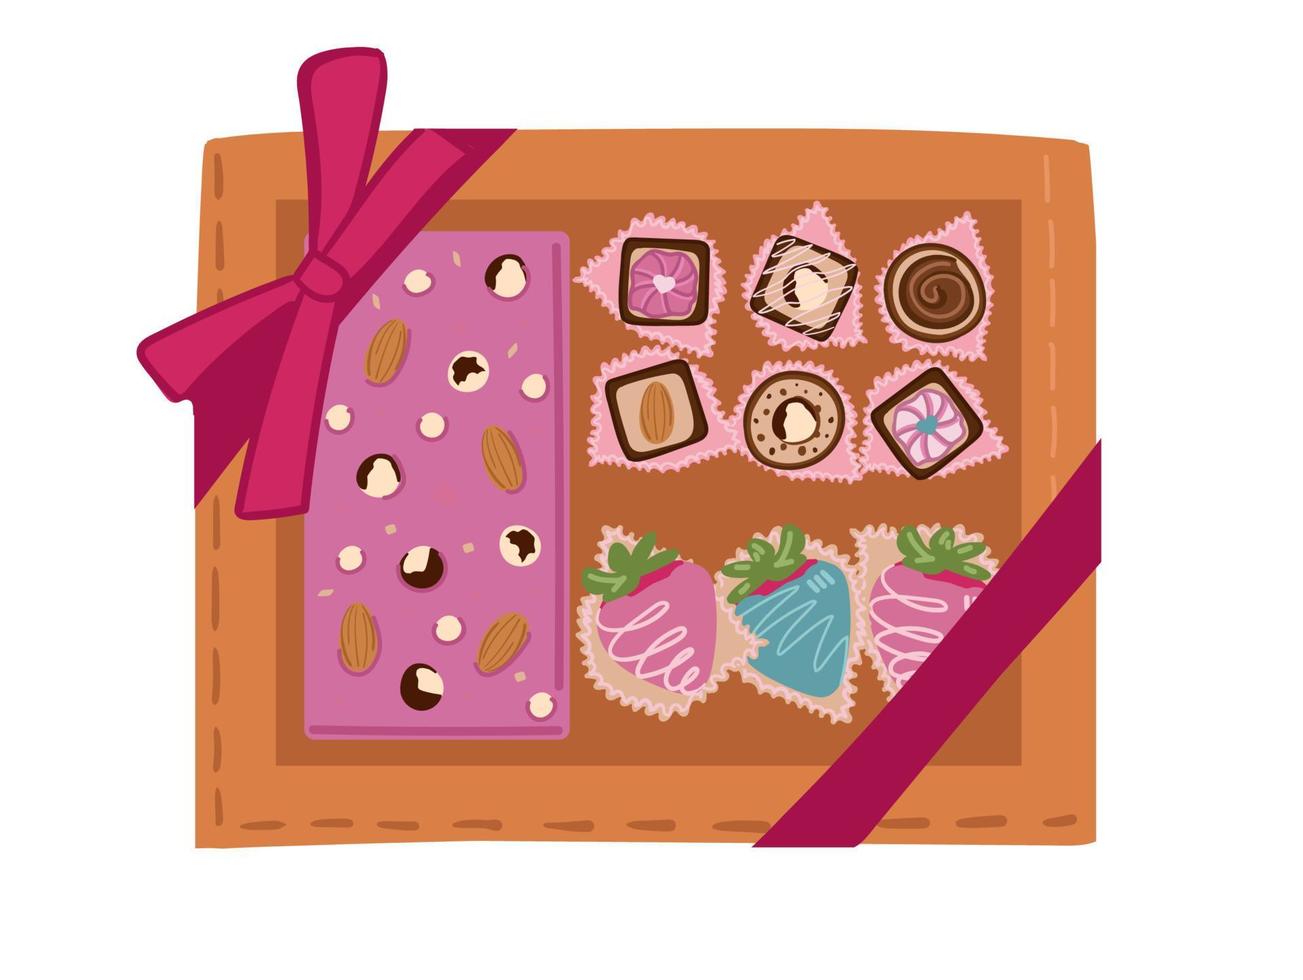 en låda av choklad som en gåva. sötsaker för valentine s dag, mor s dag, och kvinnor s dag. platt stil, vektor illustration.